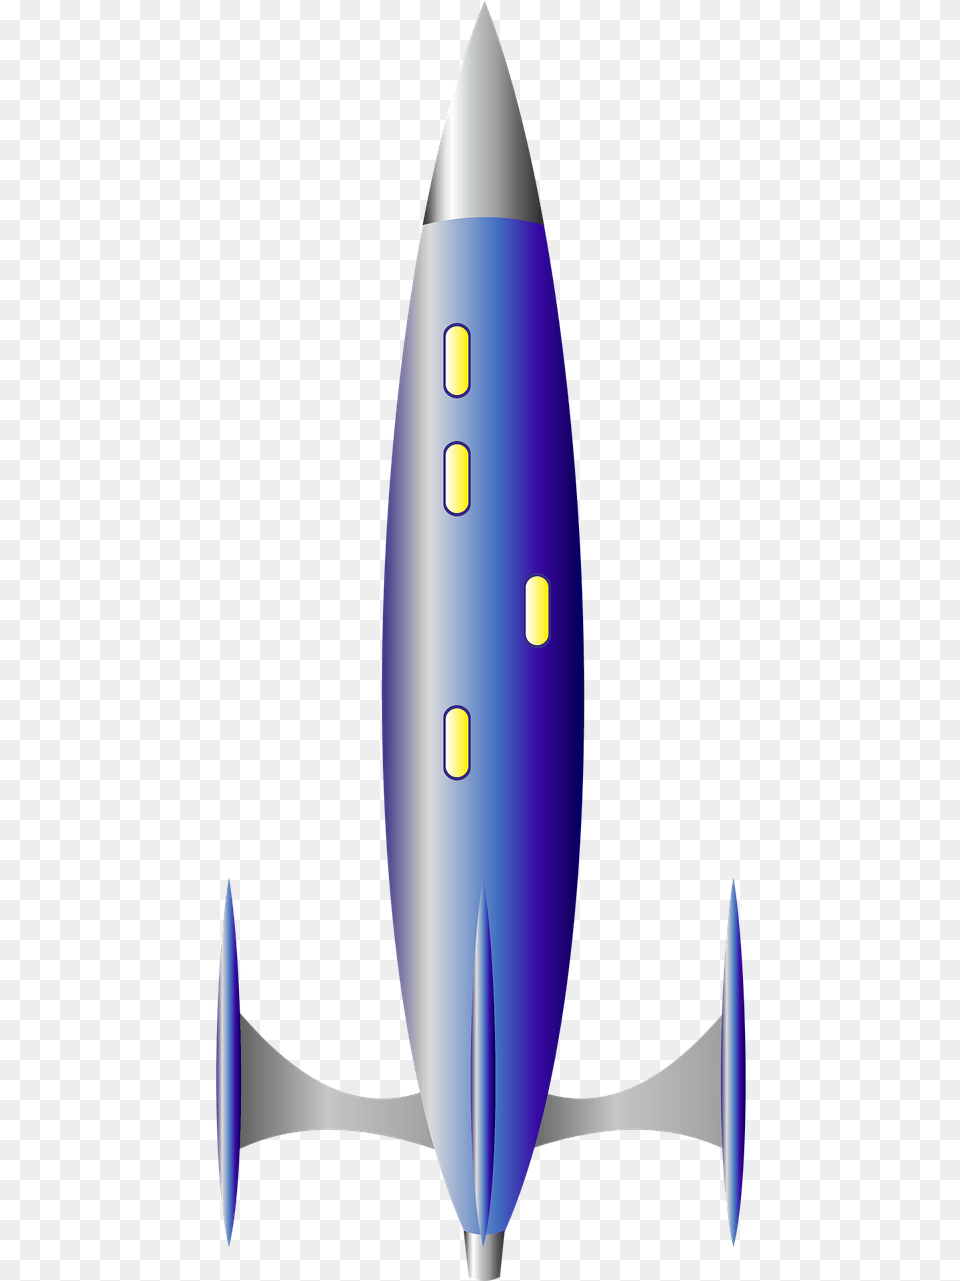 Rhajo, Rocket, Weapon, Aircraft, Transportation Png Image